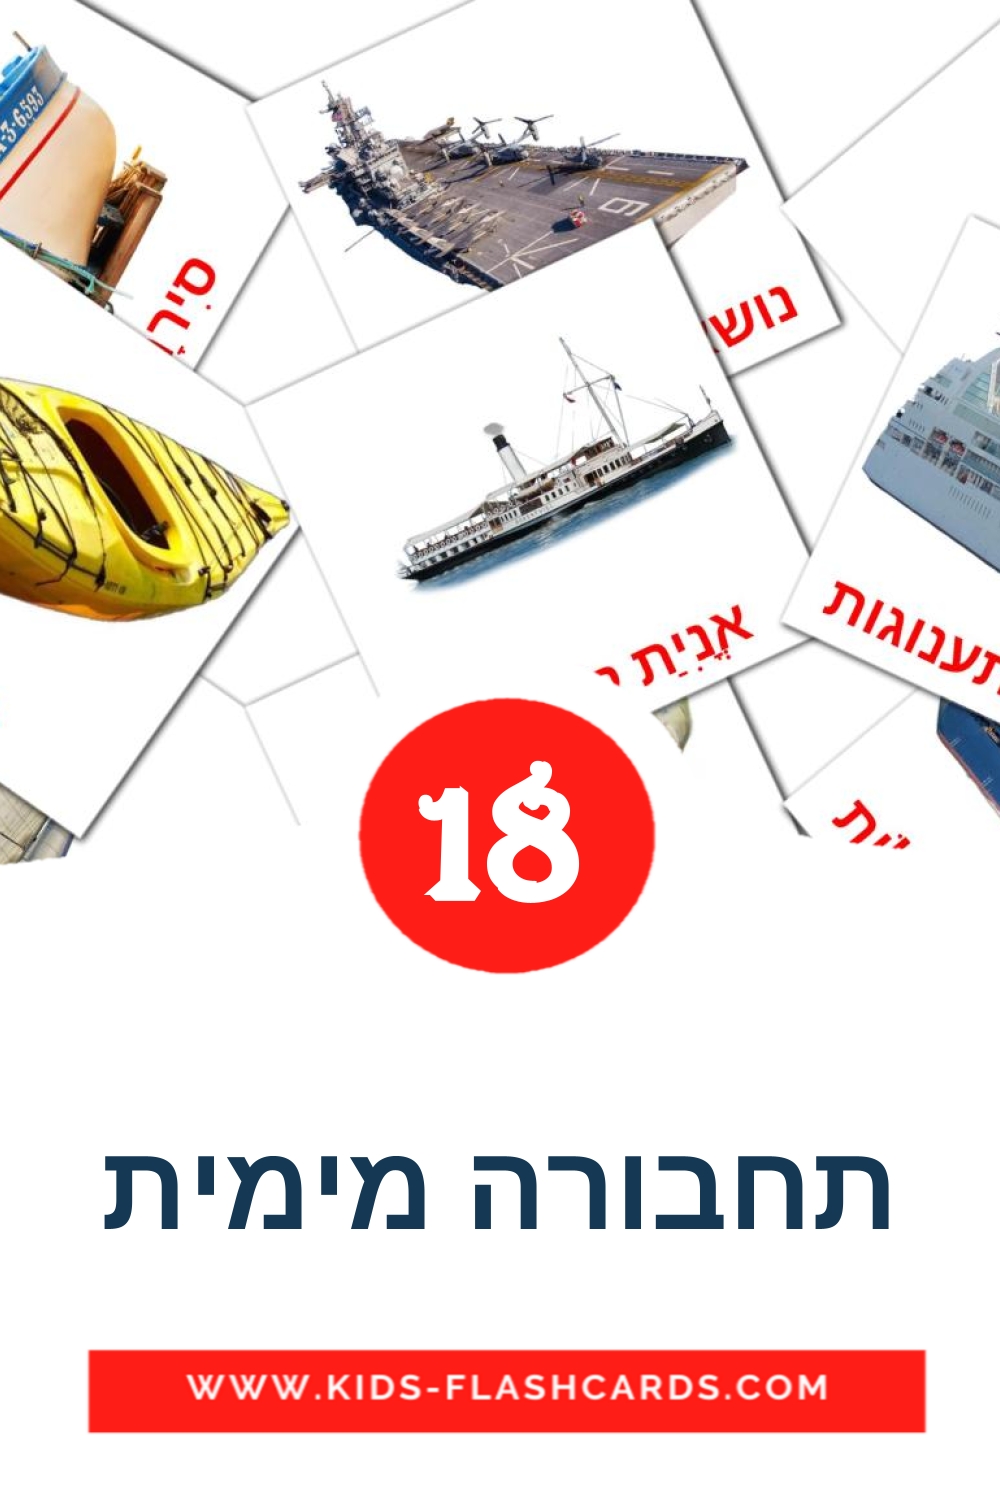 18 tarjetas didacticas de תחבורה מימית para el jardín de infancia en hebreo